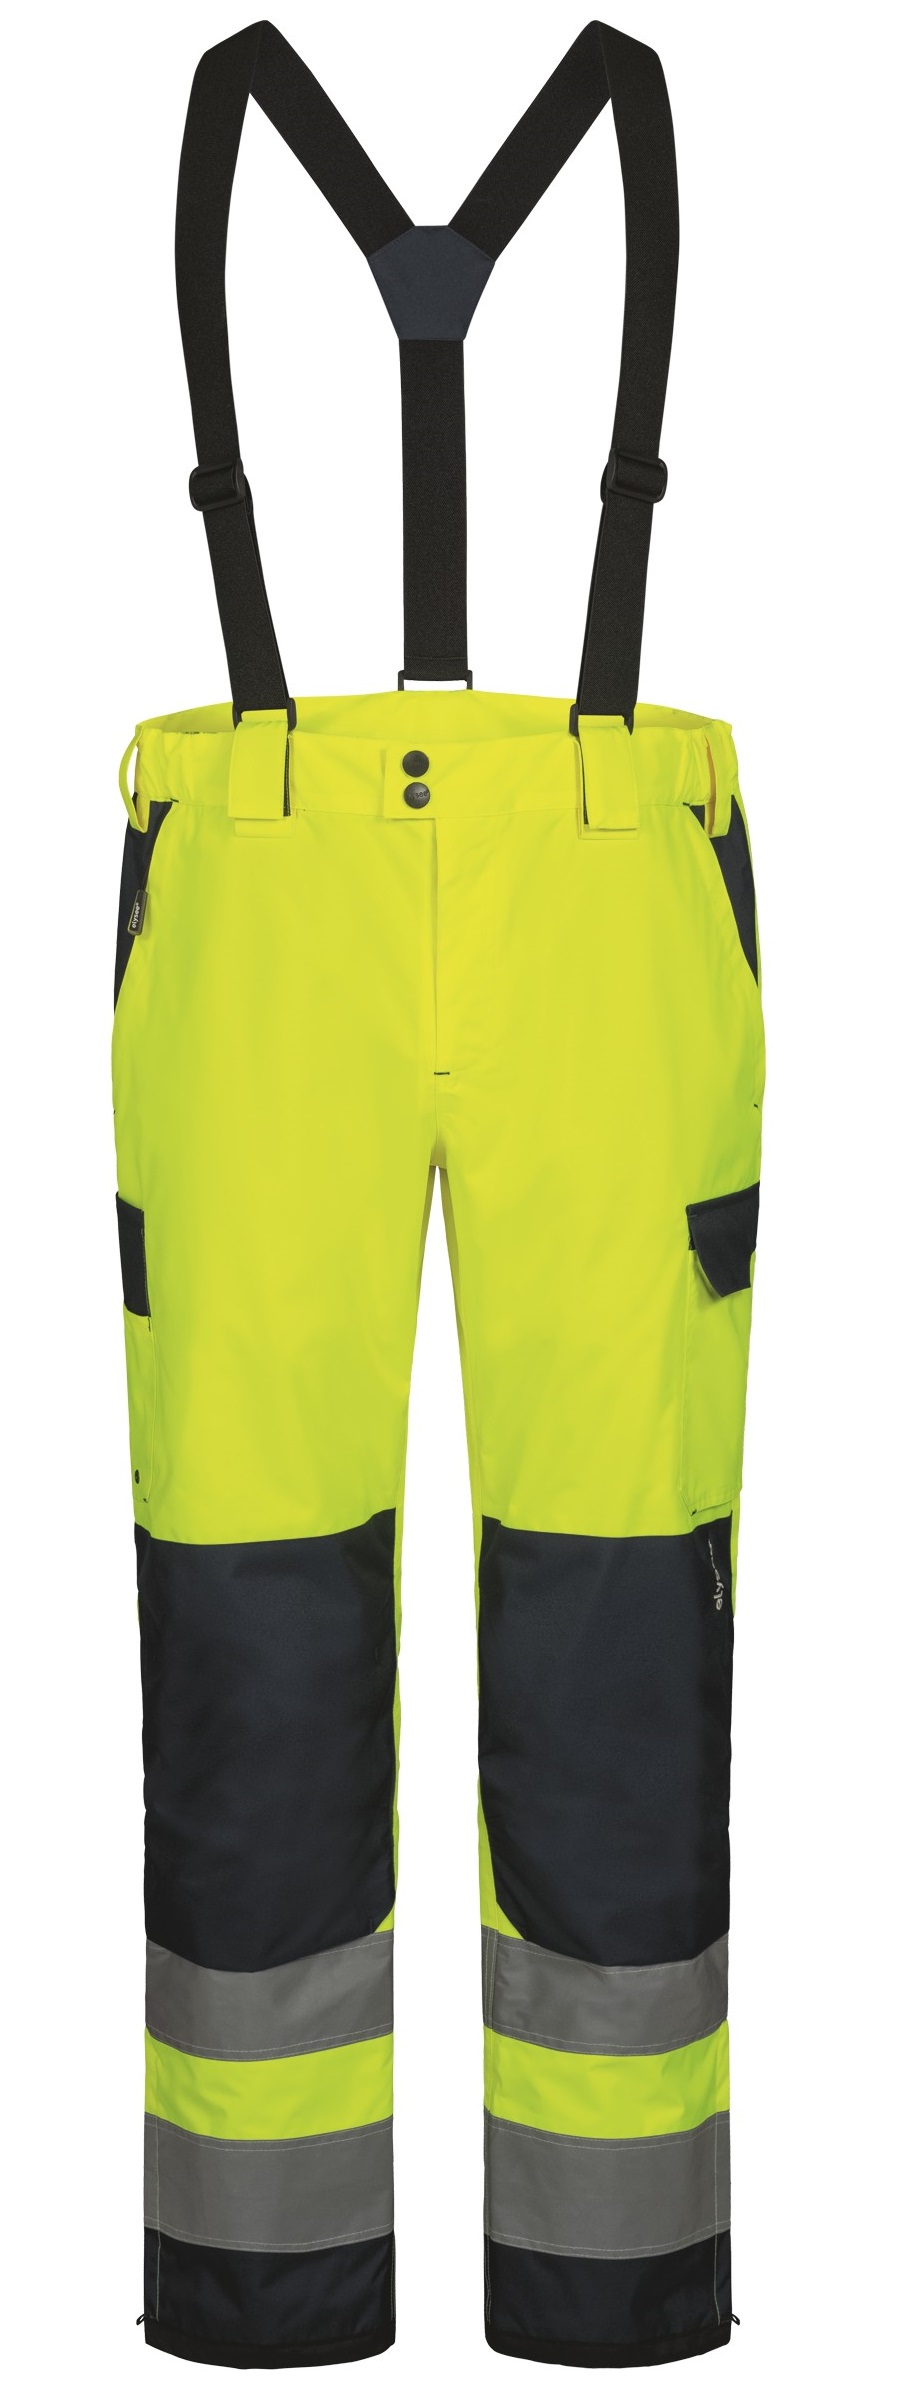 F-Warnschutz-Bundhose, *FLOKI*, gelb/marine